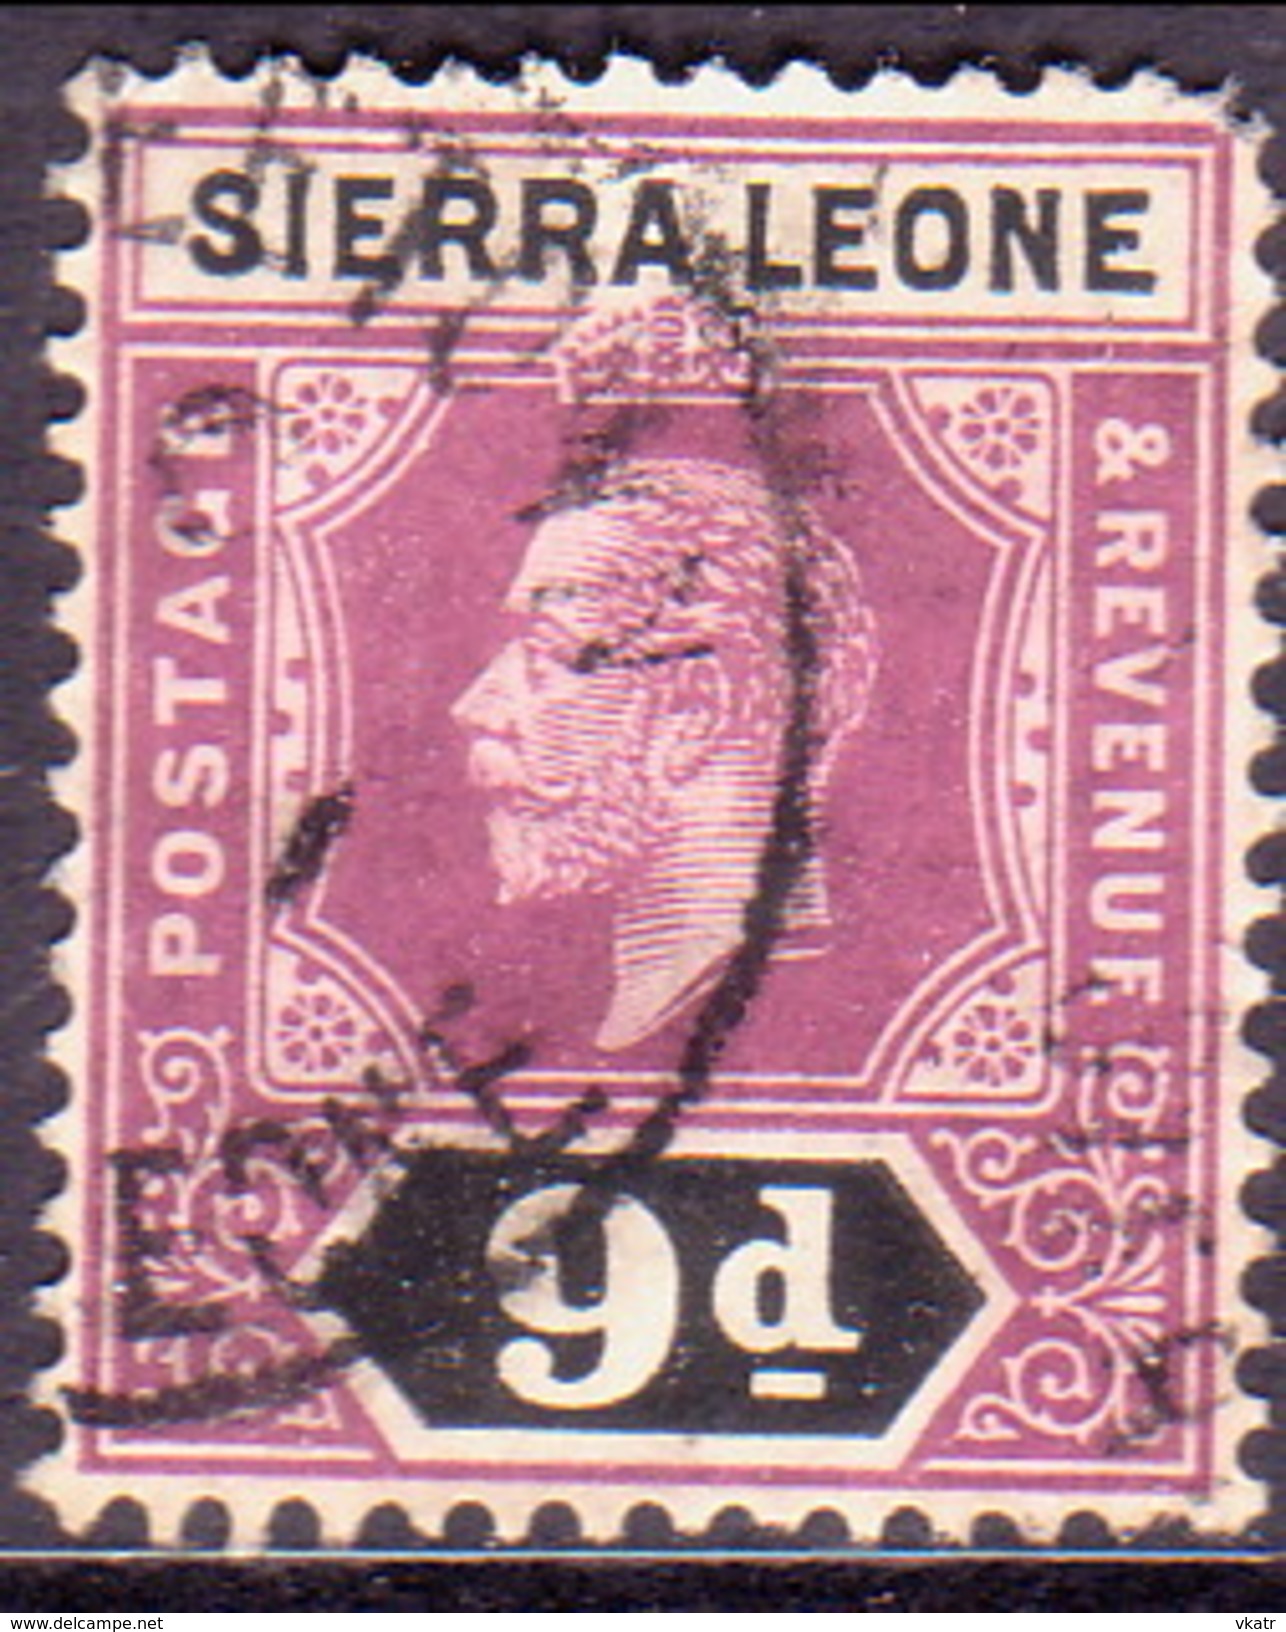 SIERRA LEONE 1912 SG #121 9d Used Wmk Mult.Crown CA Die I CV £12 Faulted Corner - Sierra Leone (...-1960)